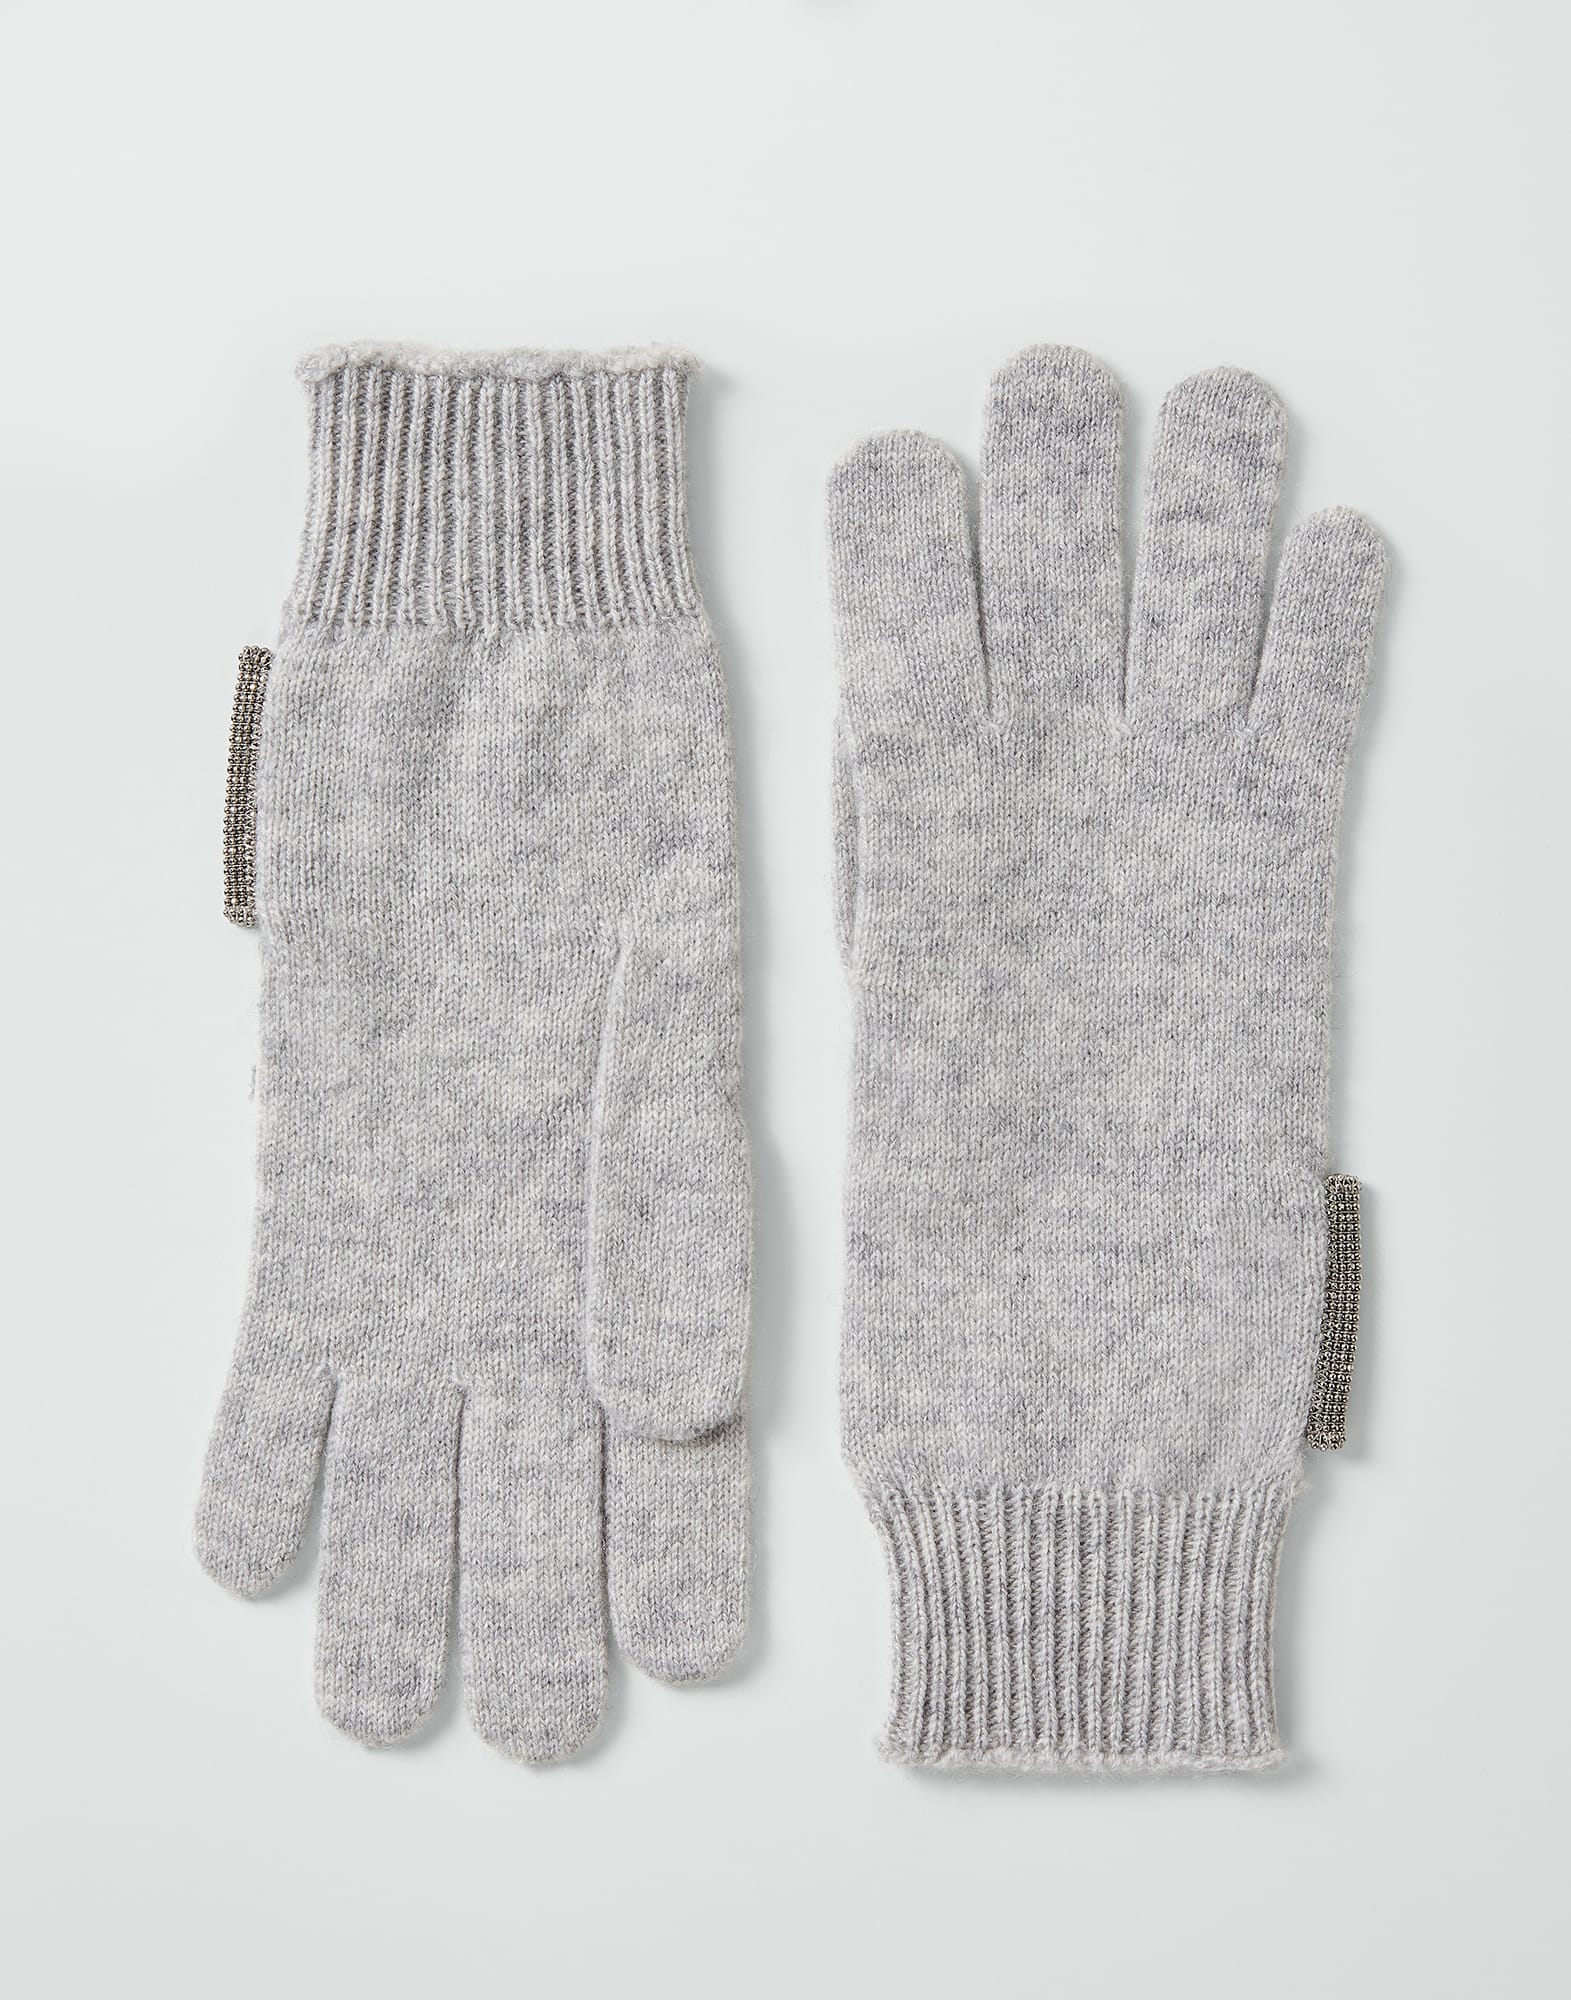 Handschuhe aus Strick